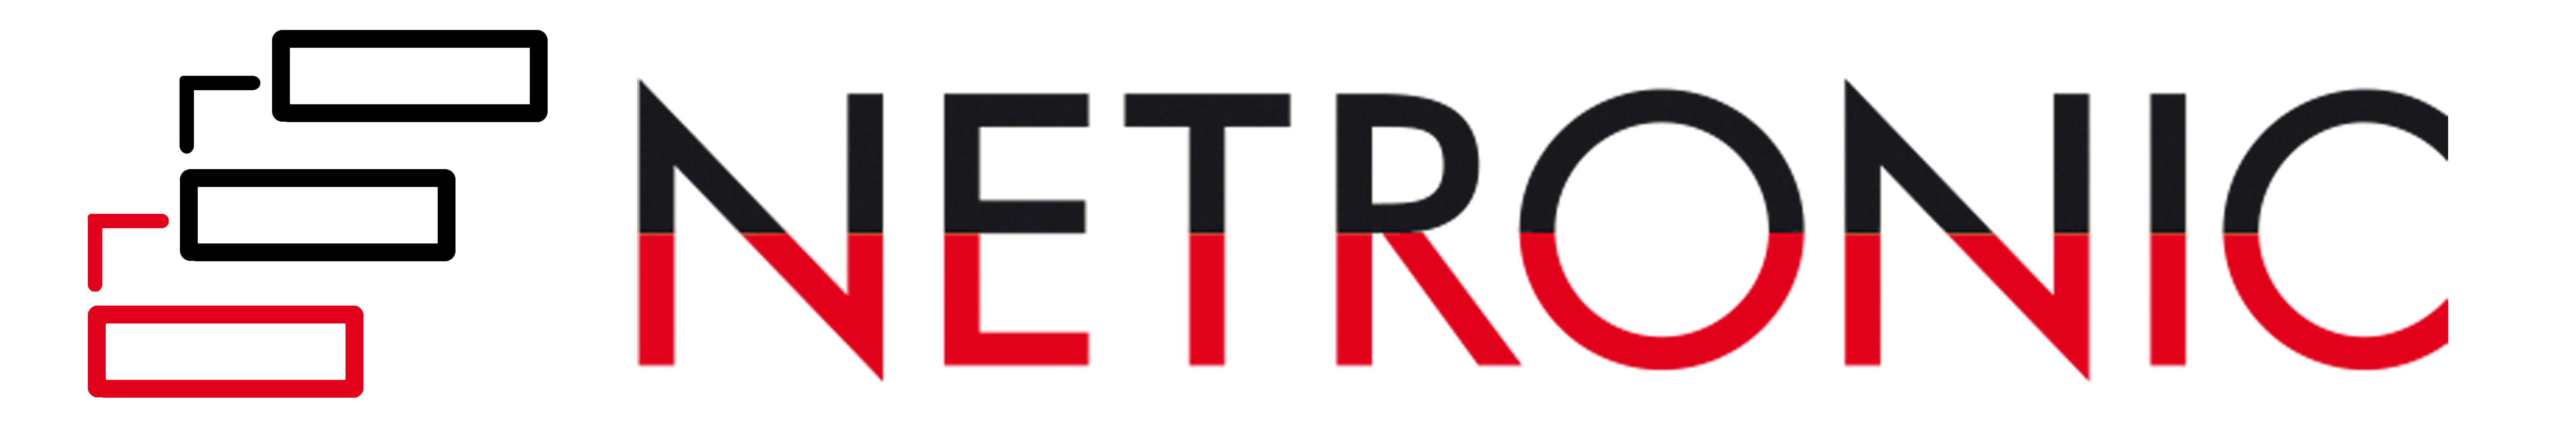 Netronic Logo